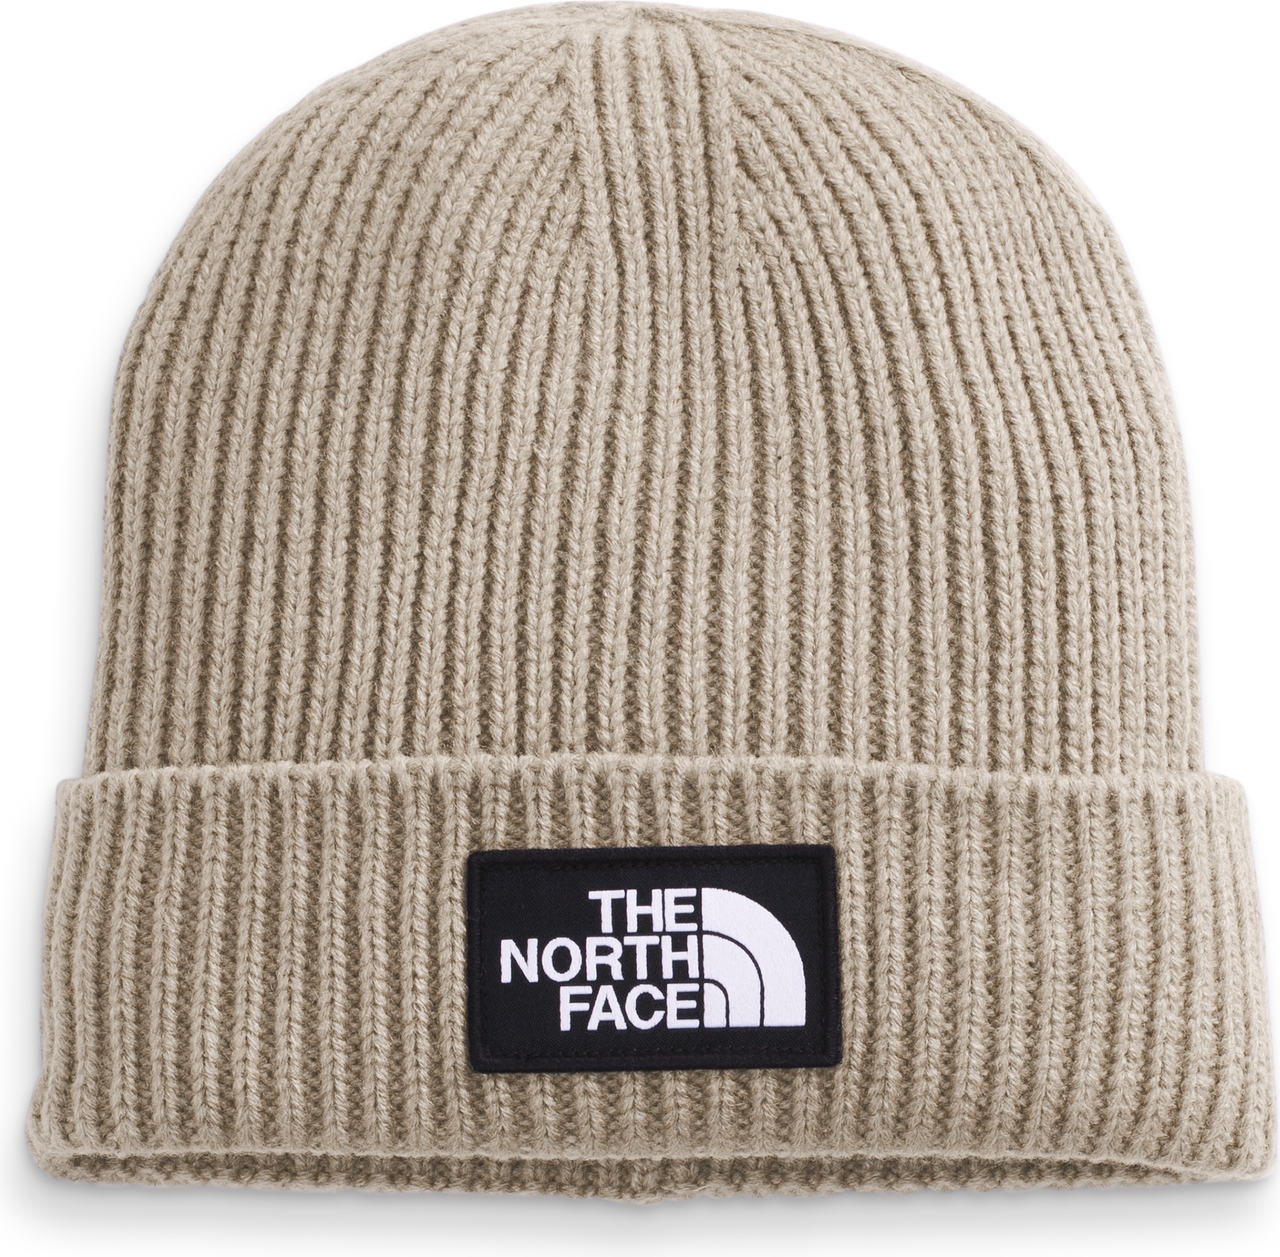 The North Face Accessories Tnf Logo Box Cuffed Beanie Flax